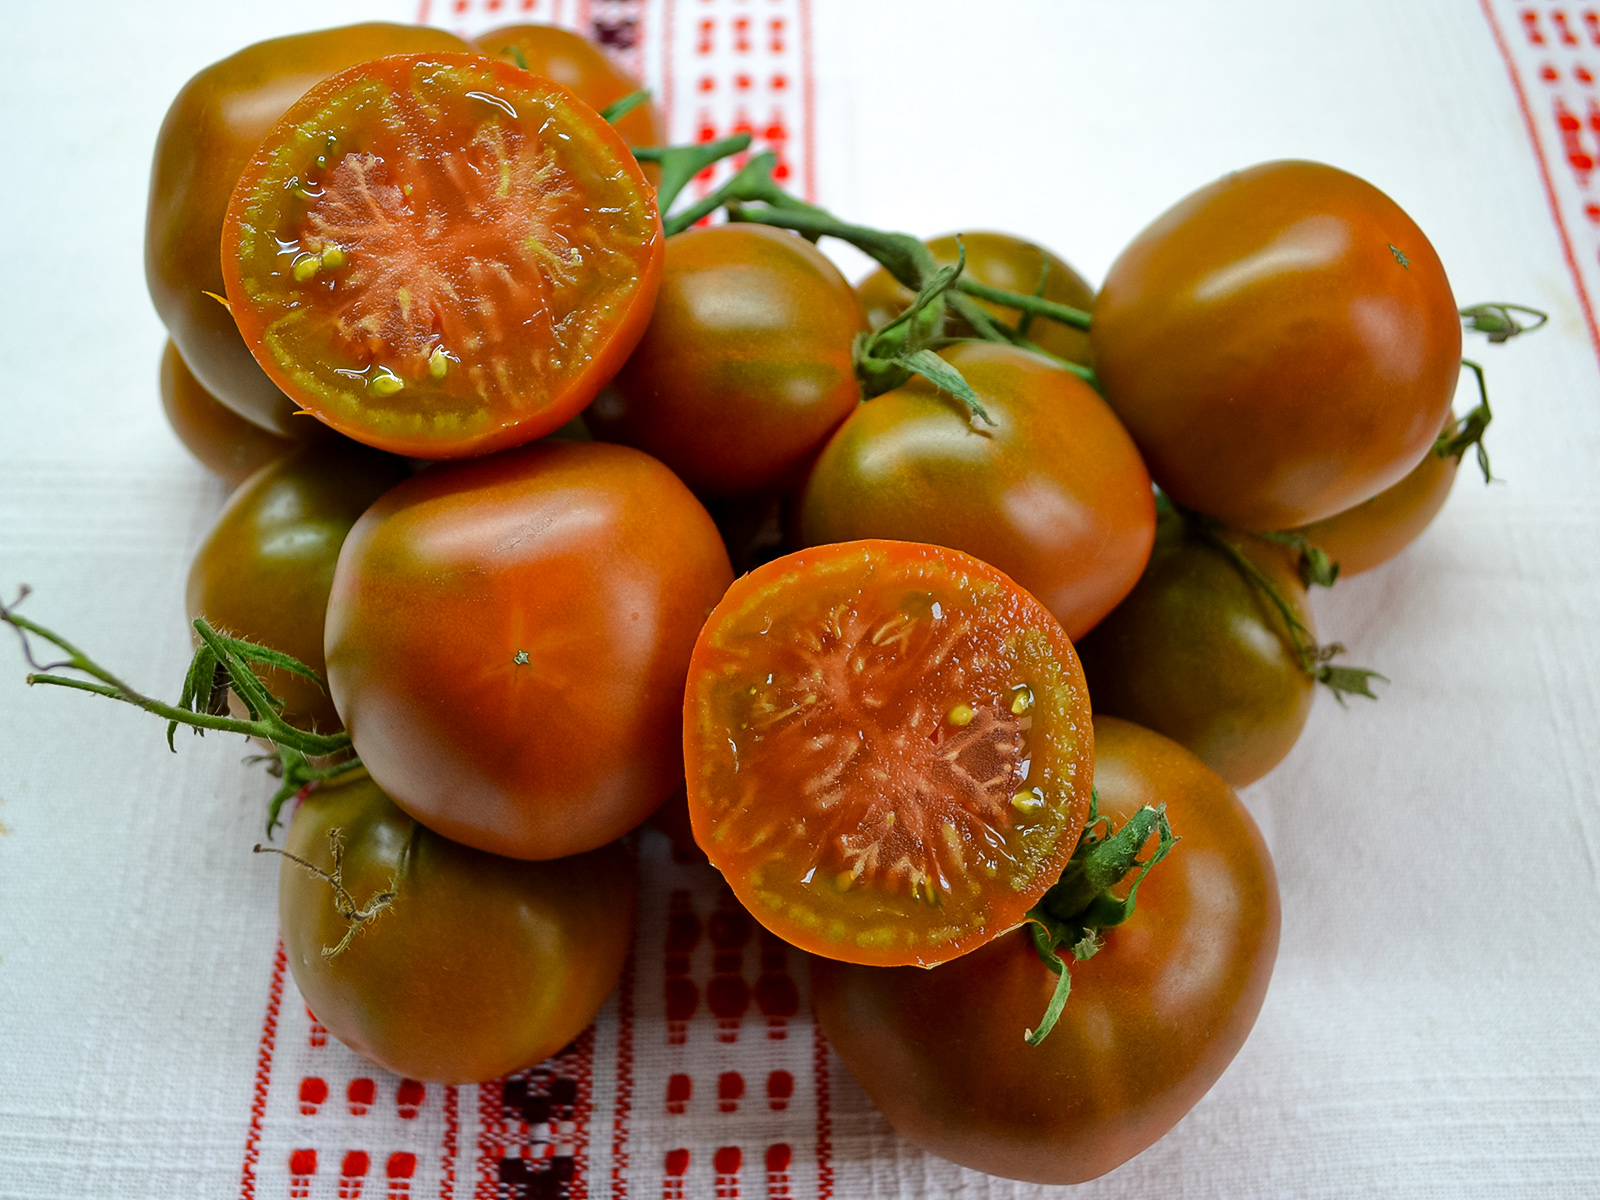 Коллекционный сорт томата Ткрракотовый Торбена - семена в магакзине Elya Garden с бесплатной доставкой - фотография